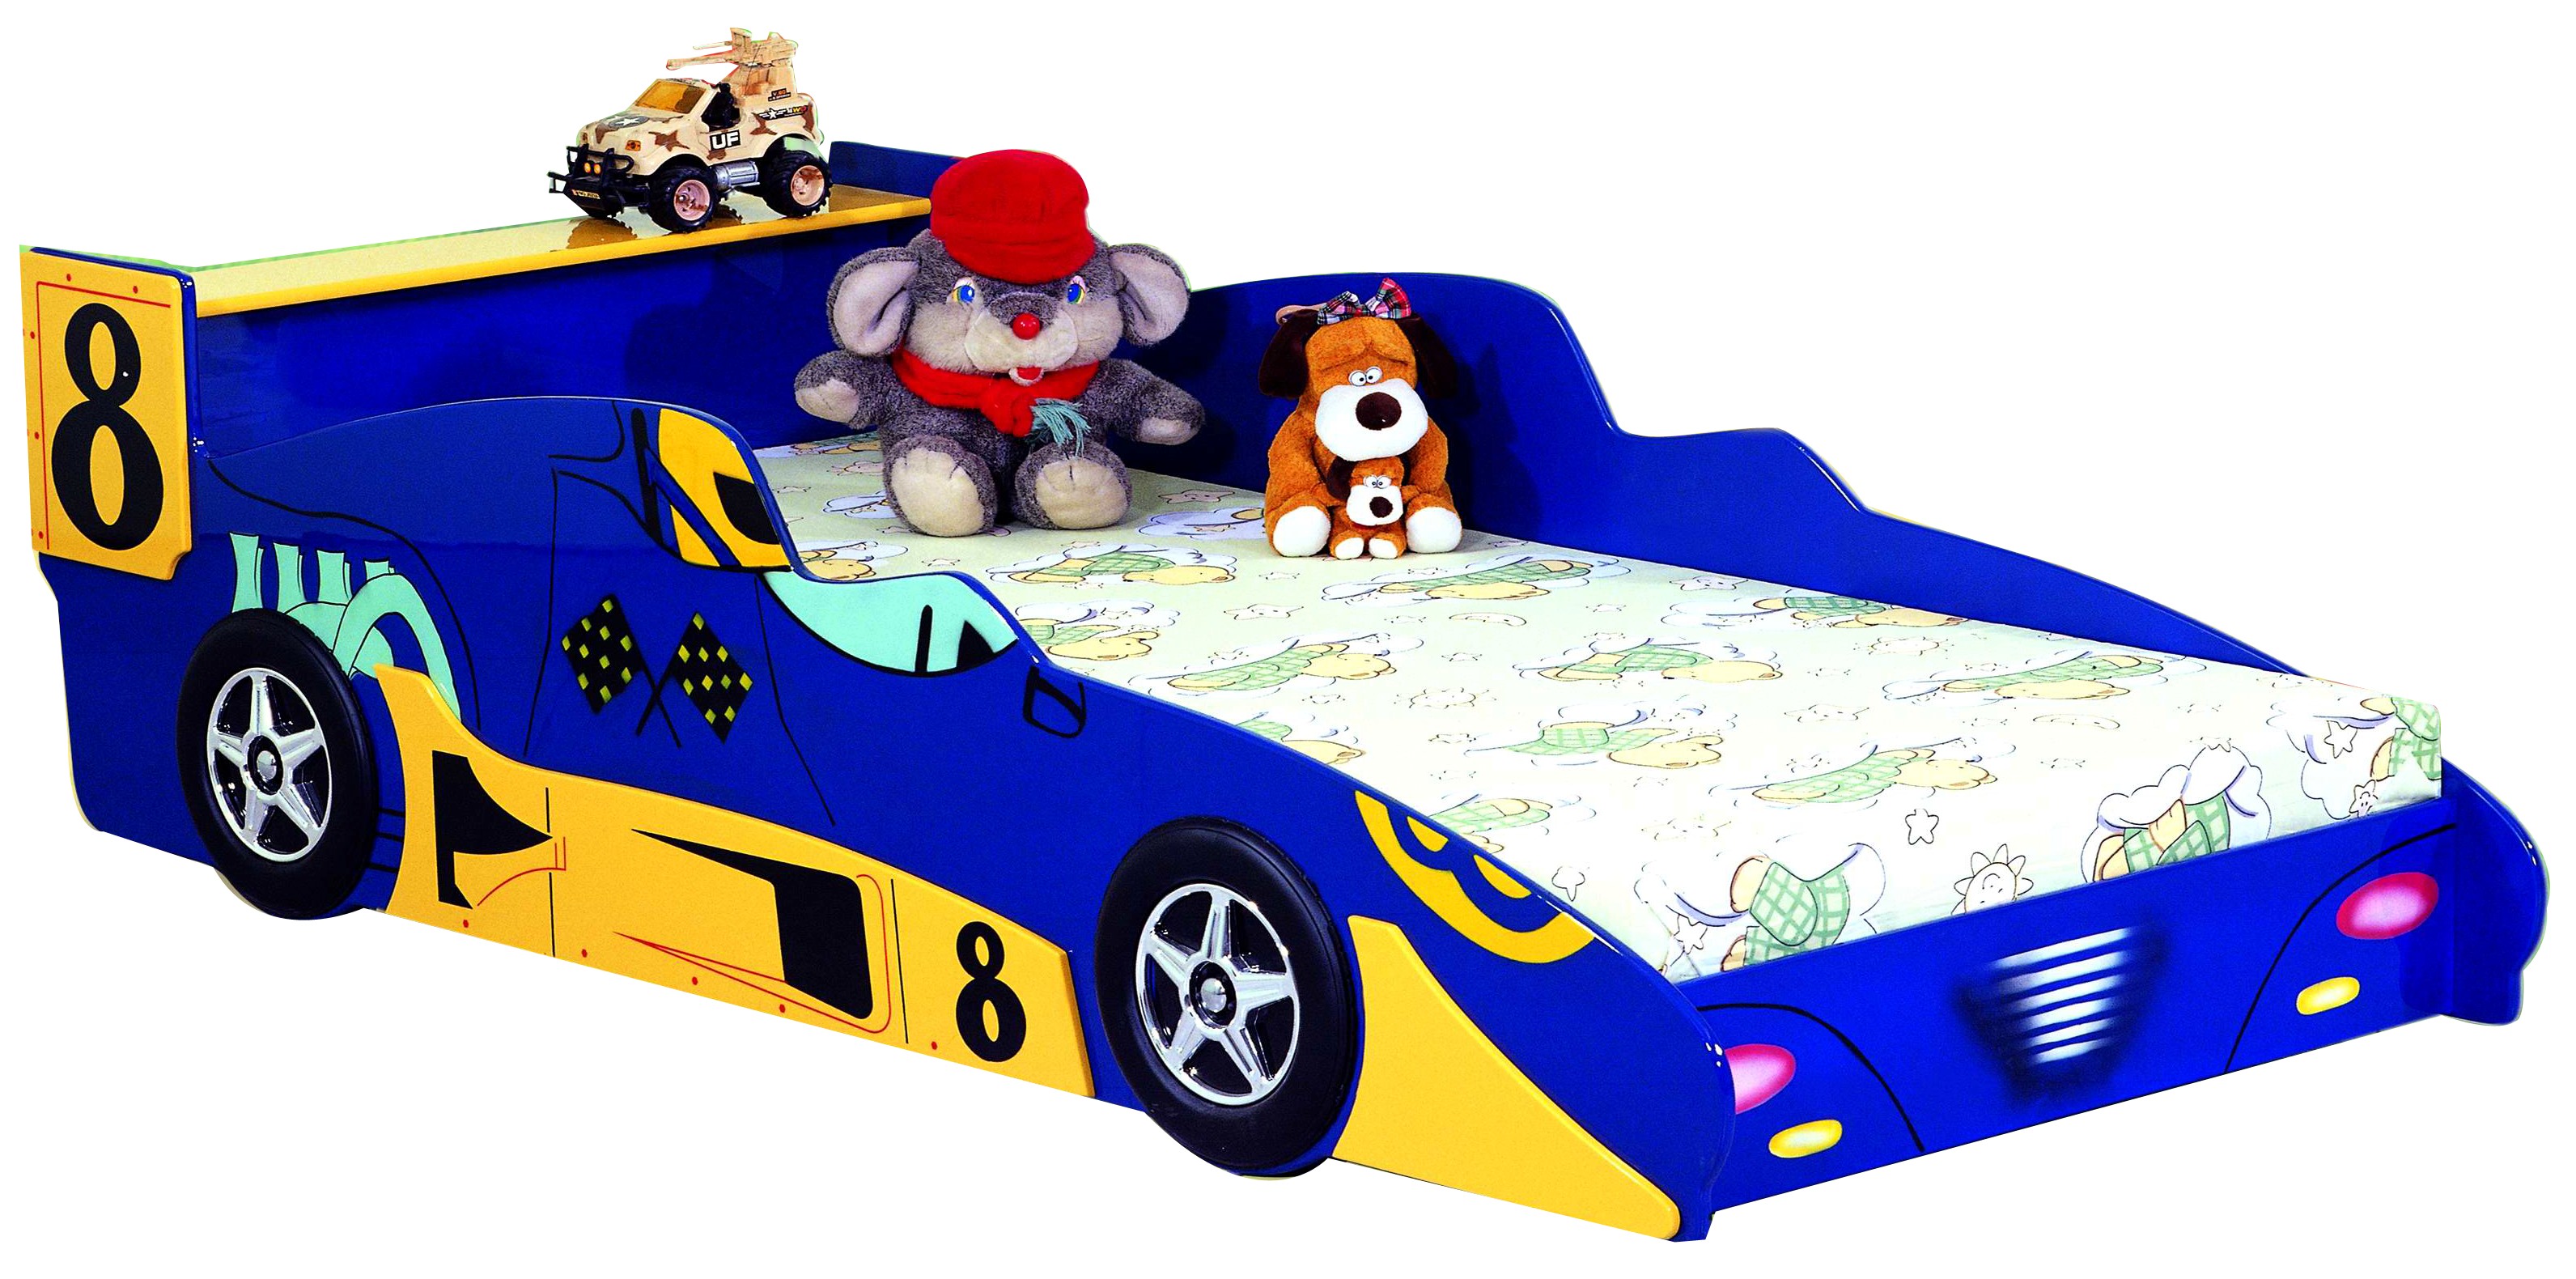 Детская кровать - Гоночная машина Формула 1 -  Racing Car F1, артикул 350, кровать для ребенка в возрасте от 3-х до 16 лет, в комплекте с матрасом, кровать машина из МДФ, цвет синий